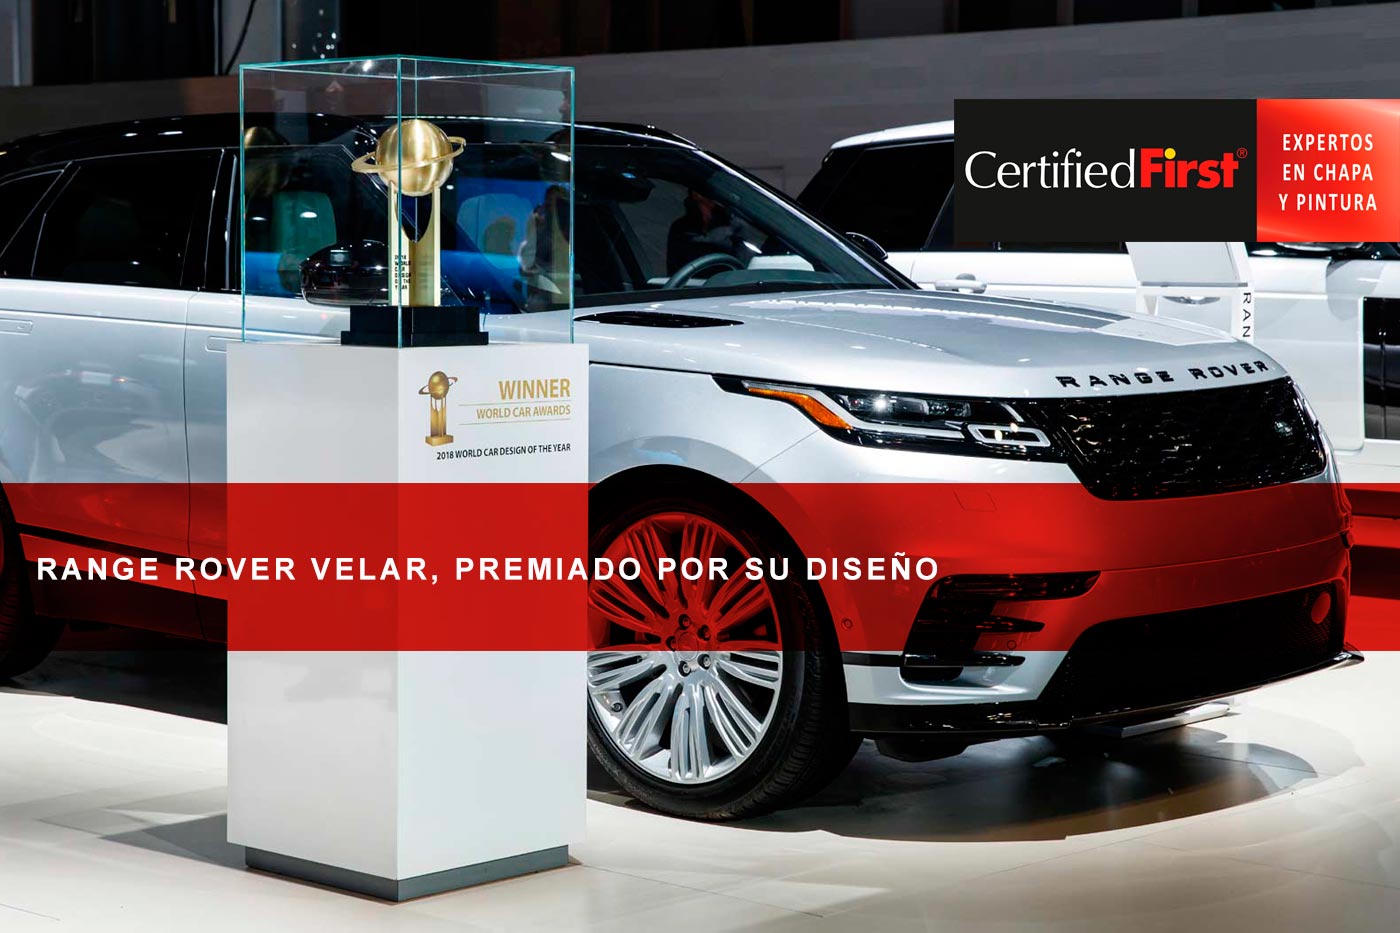 Range Rover Velar, premiado por su diseño